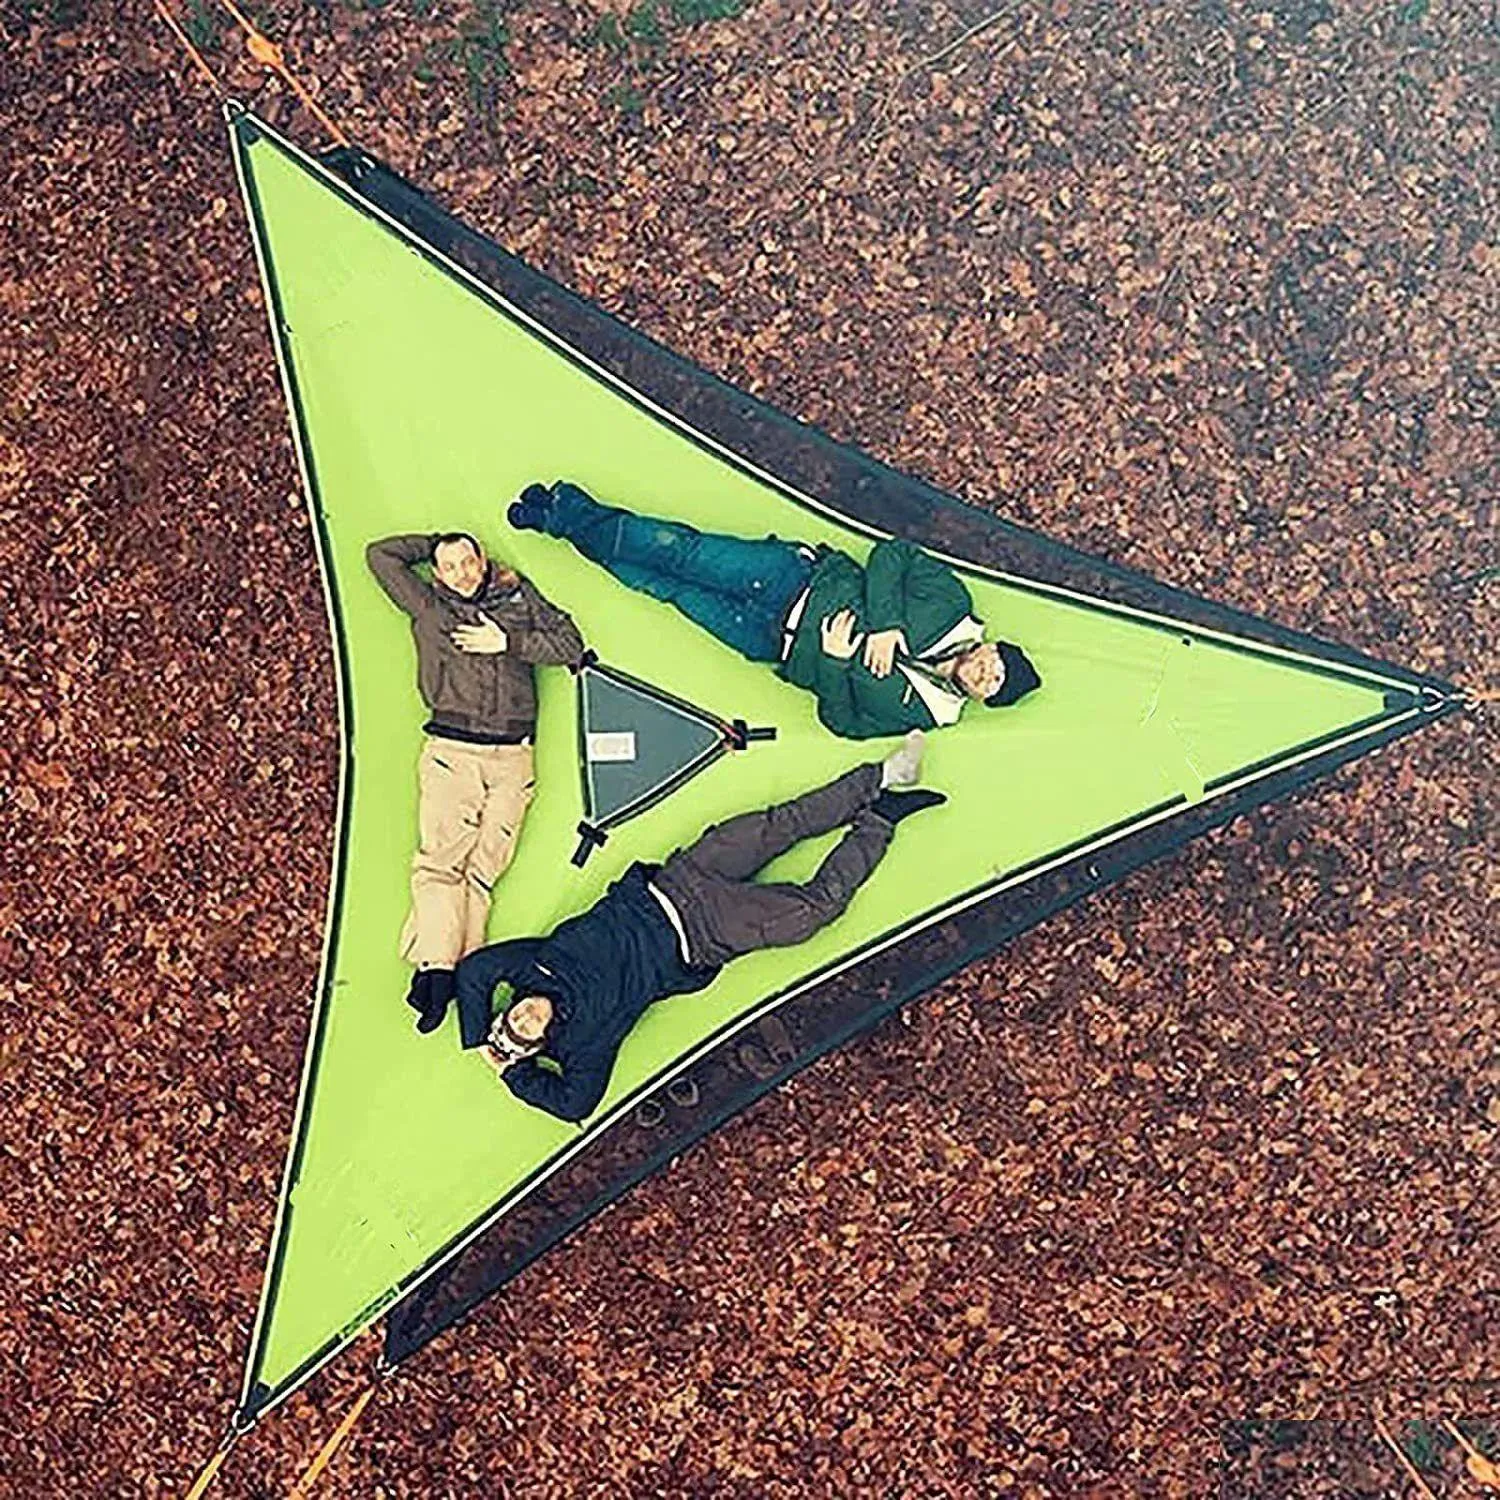 Порталджи портативный треугольный гамак 4mx4mx4m mti Персональный воздушный коврик Удобный на открытом воздушном сне вывод кровати. Доставка доставка спортивных спортивных